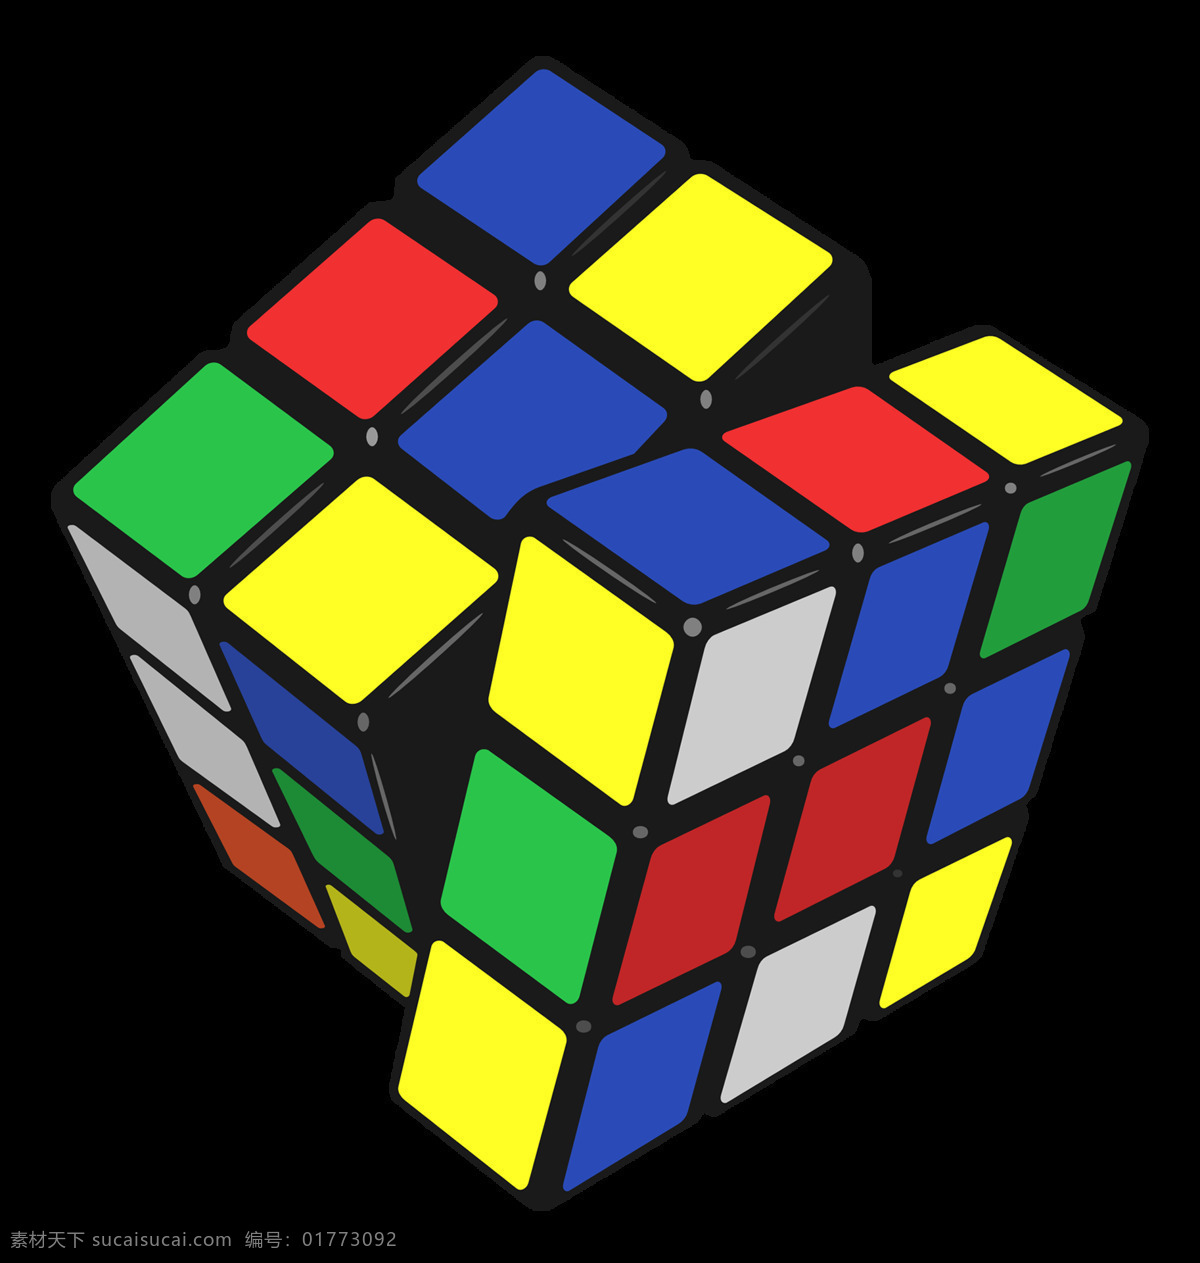 彩色 魔方 免 抠 透明 彩色魔方图片 立方体 正方体 魔方图片 魔方素材 几何图形 立体几何 几何素材